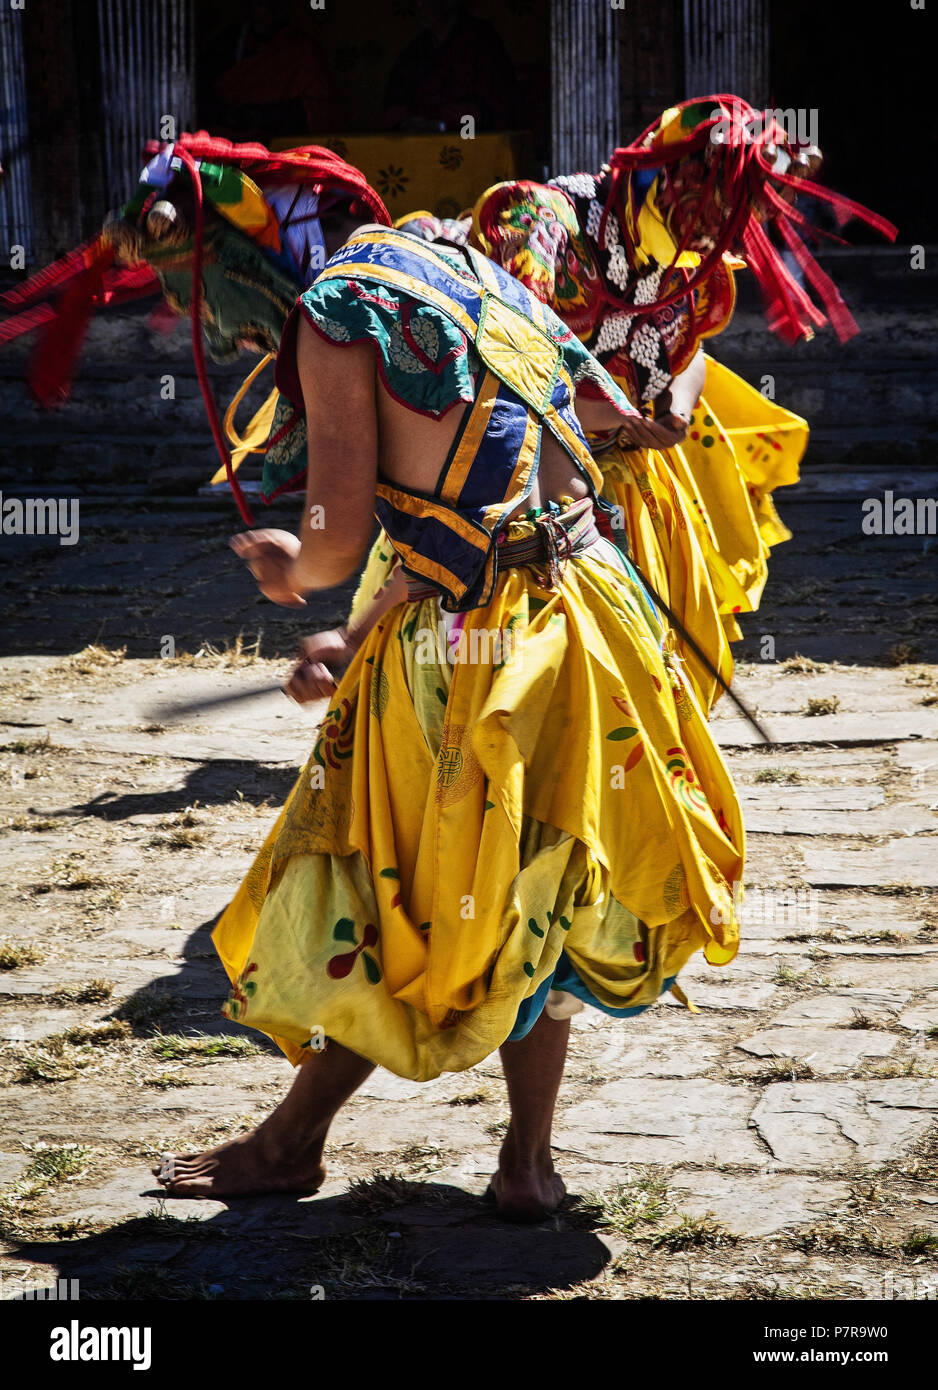 Danseurs en costume d'effectuer une chasse traditionnelle danse dans Jakar, le Bhoutan. Banque D'Images